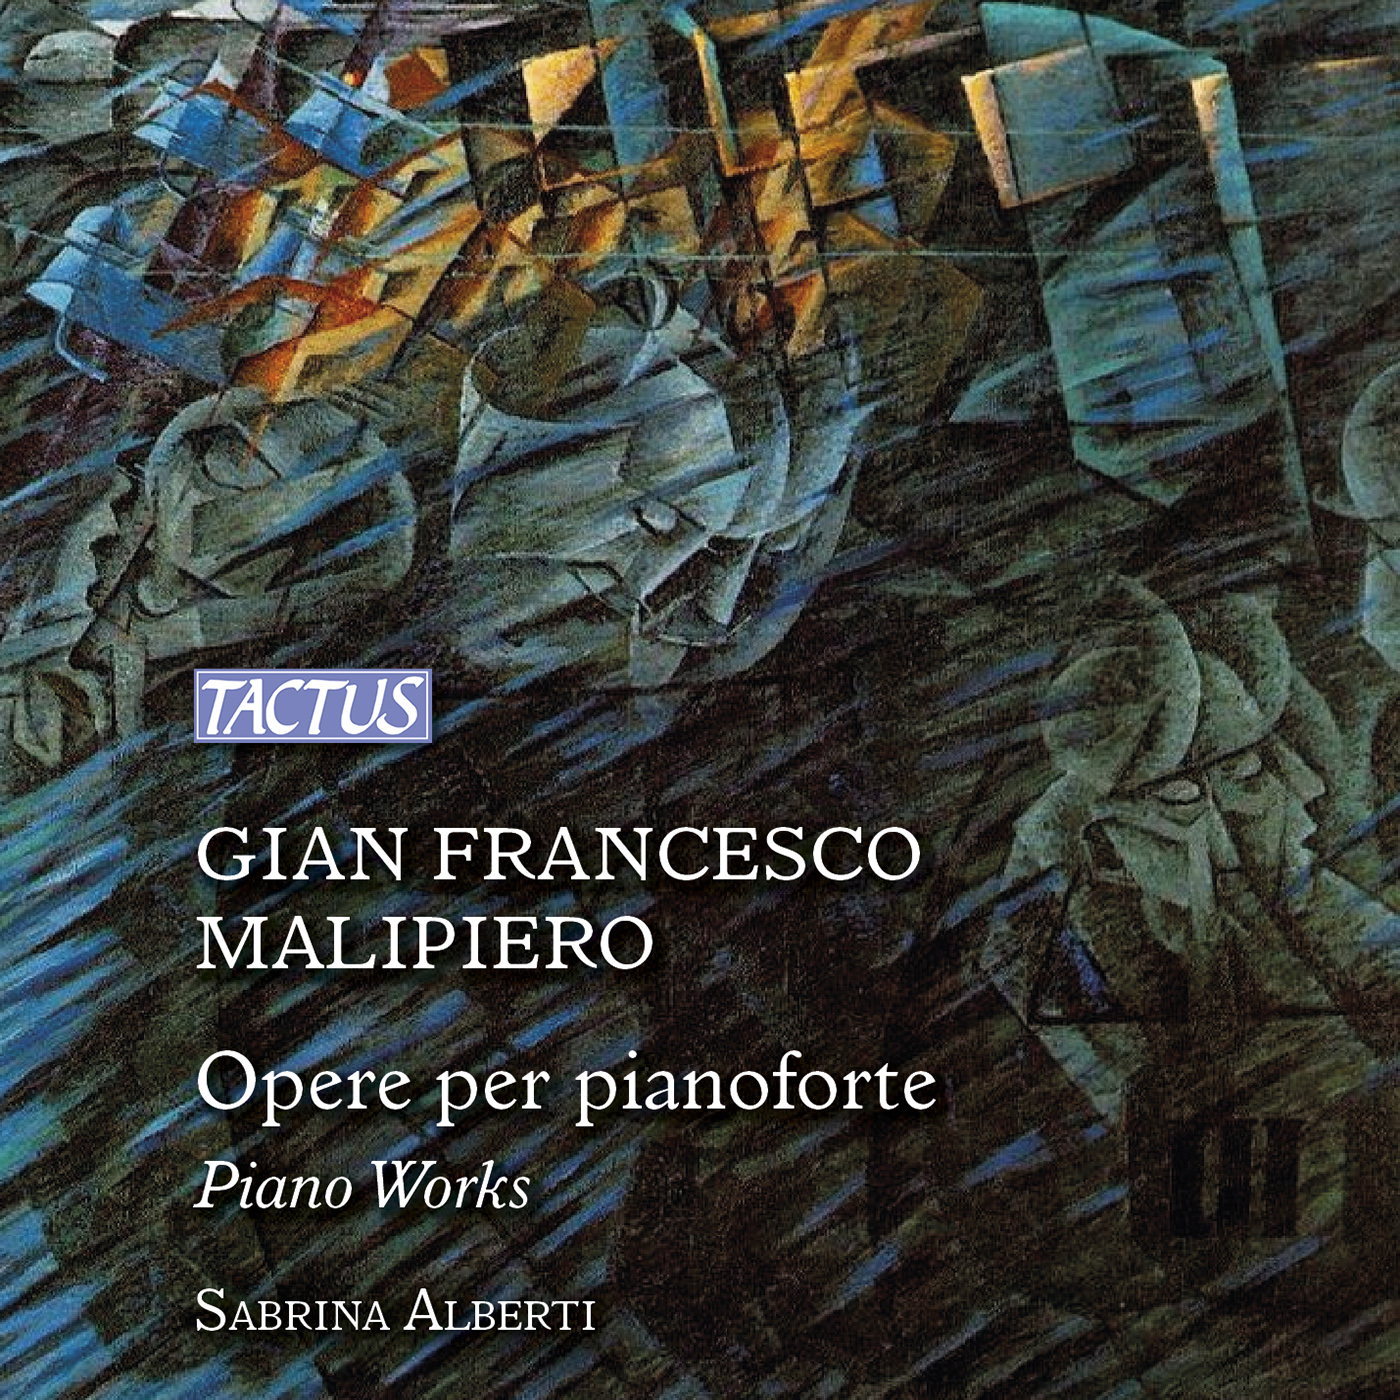 MALIPIERO, G.F.: Piano Music (S. Alberti)